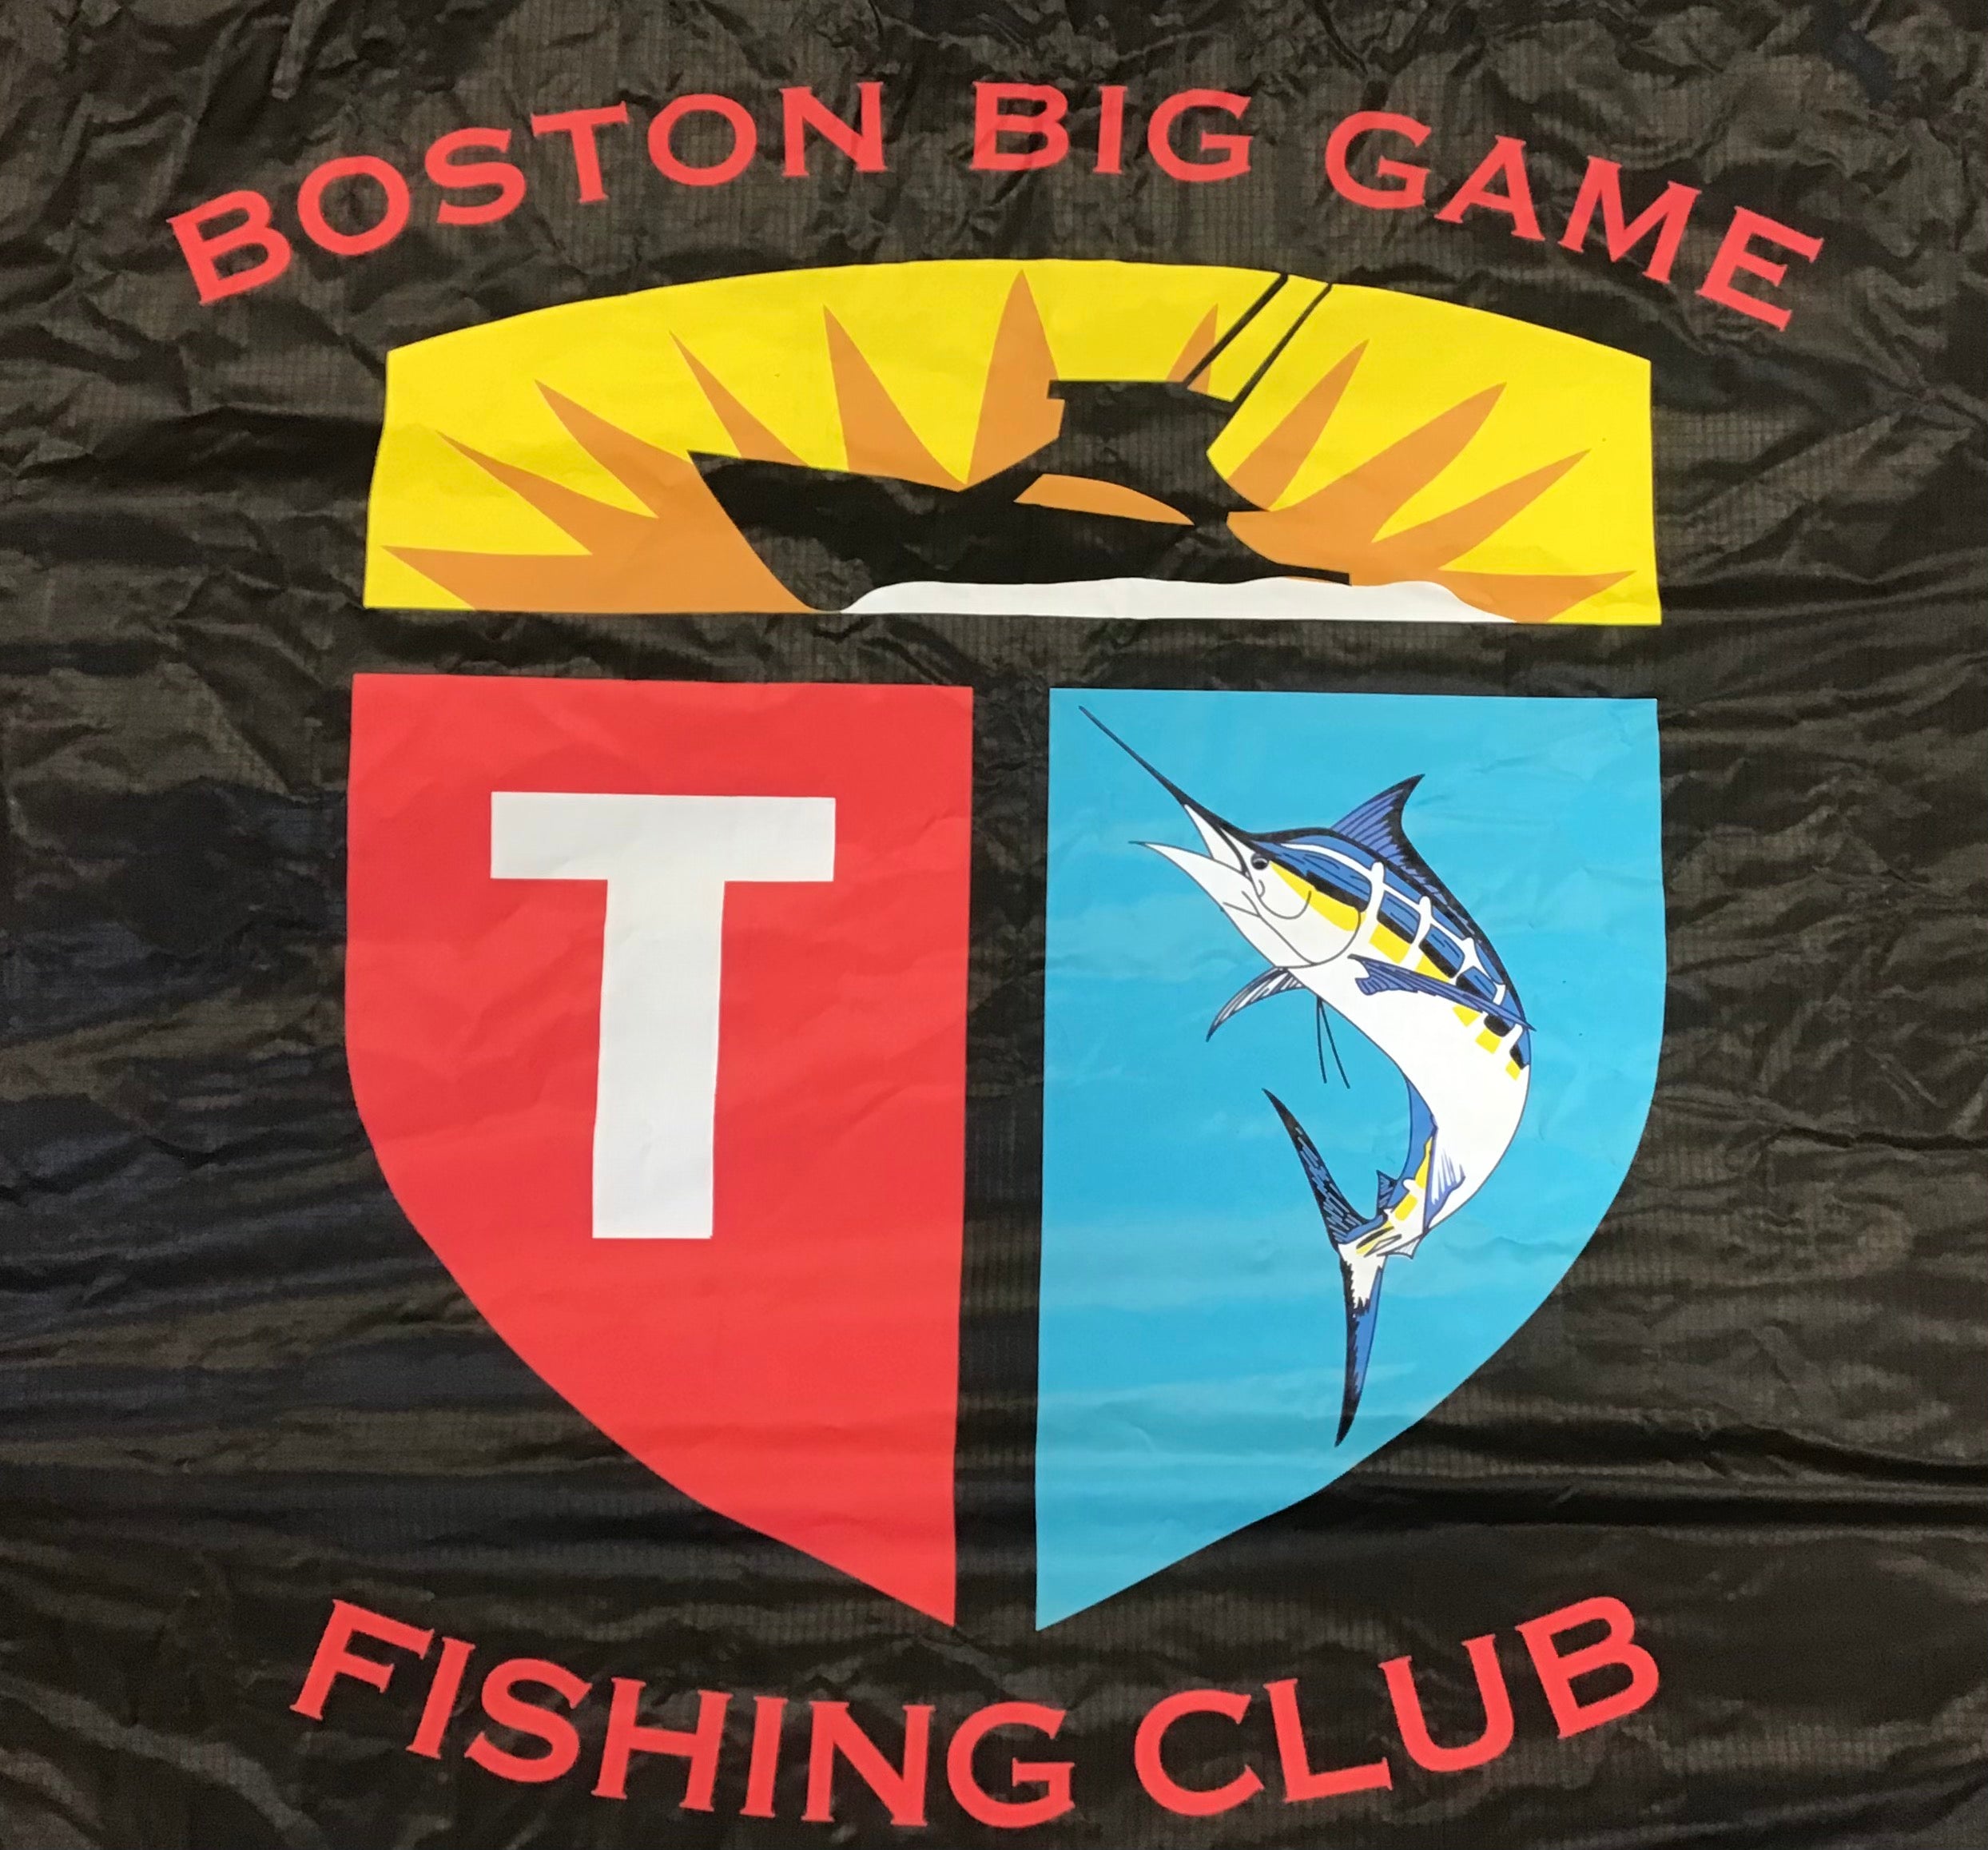 BBG - Boston Big Game Fishing Club Kite